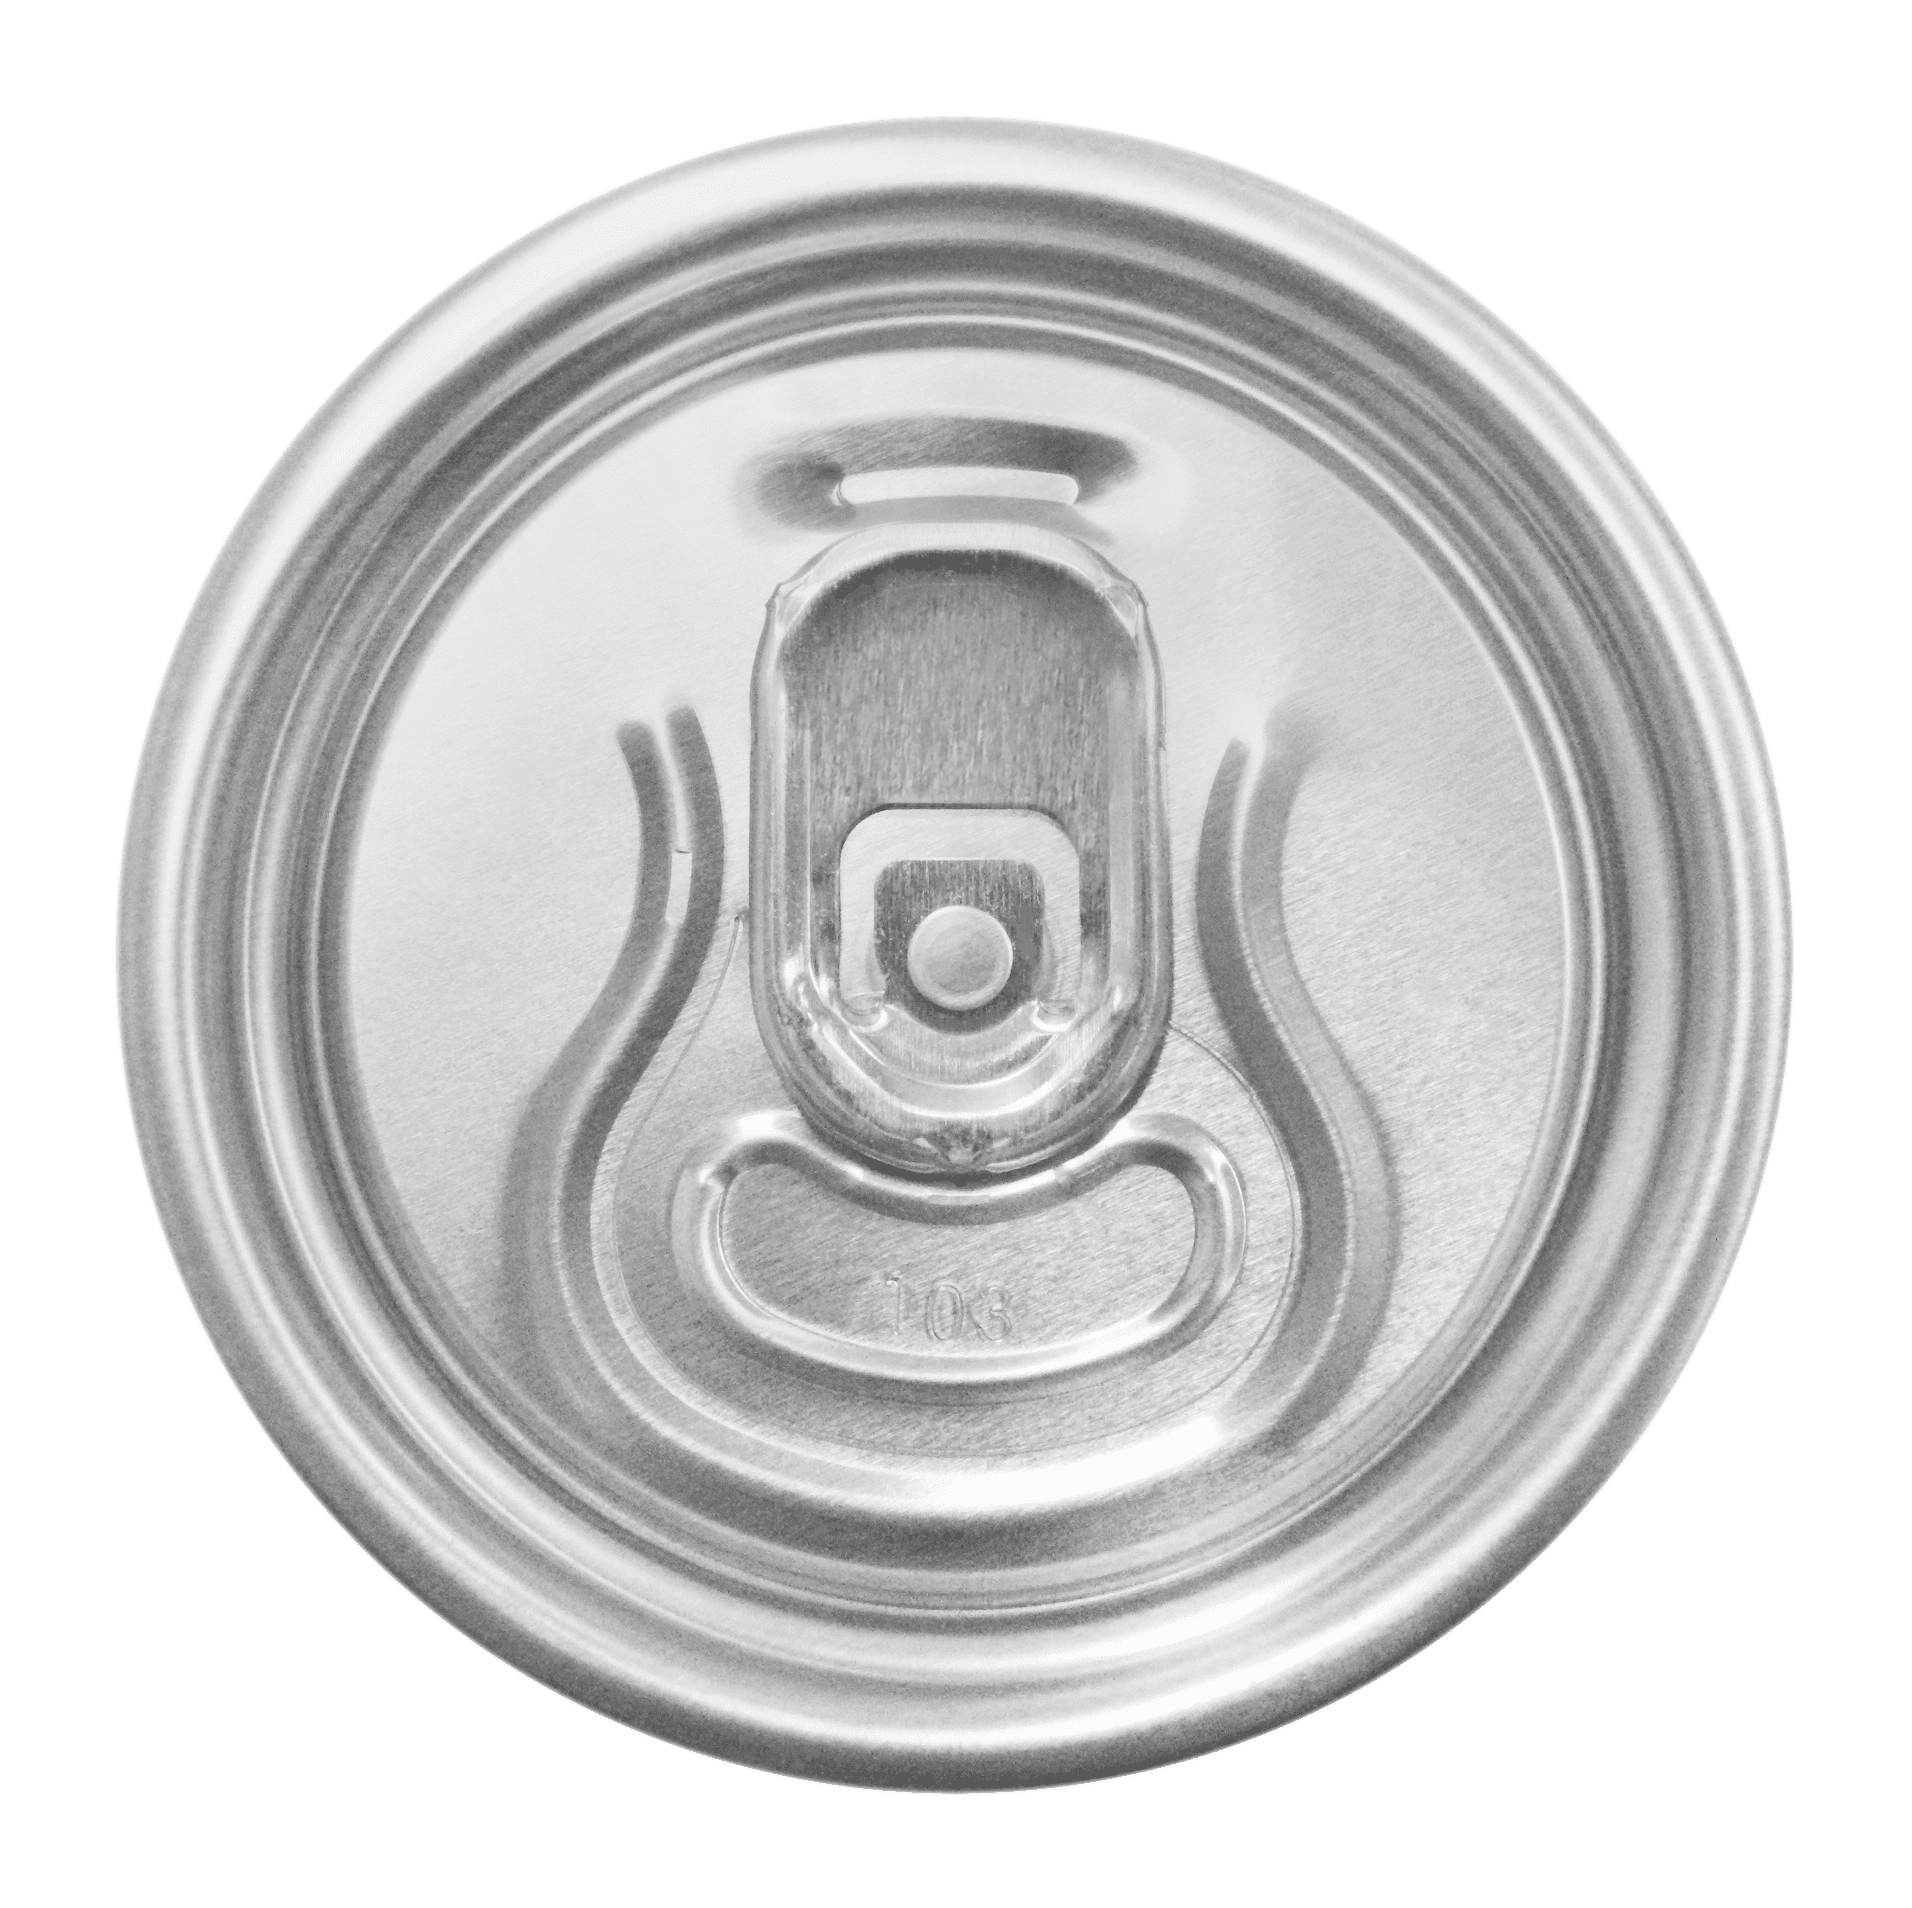 Wieczko puszki na piwo srebrne + kluczyk srebrny (Zdjęcie 1)